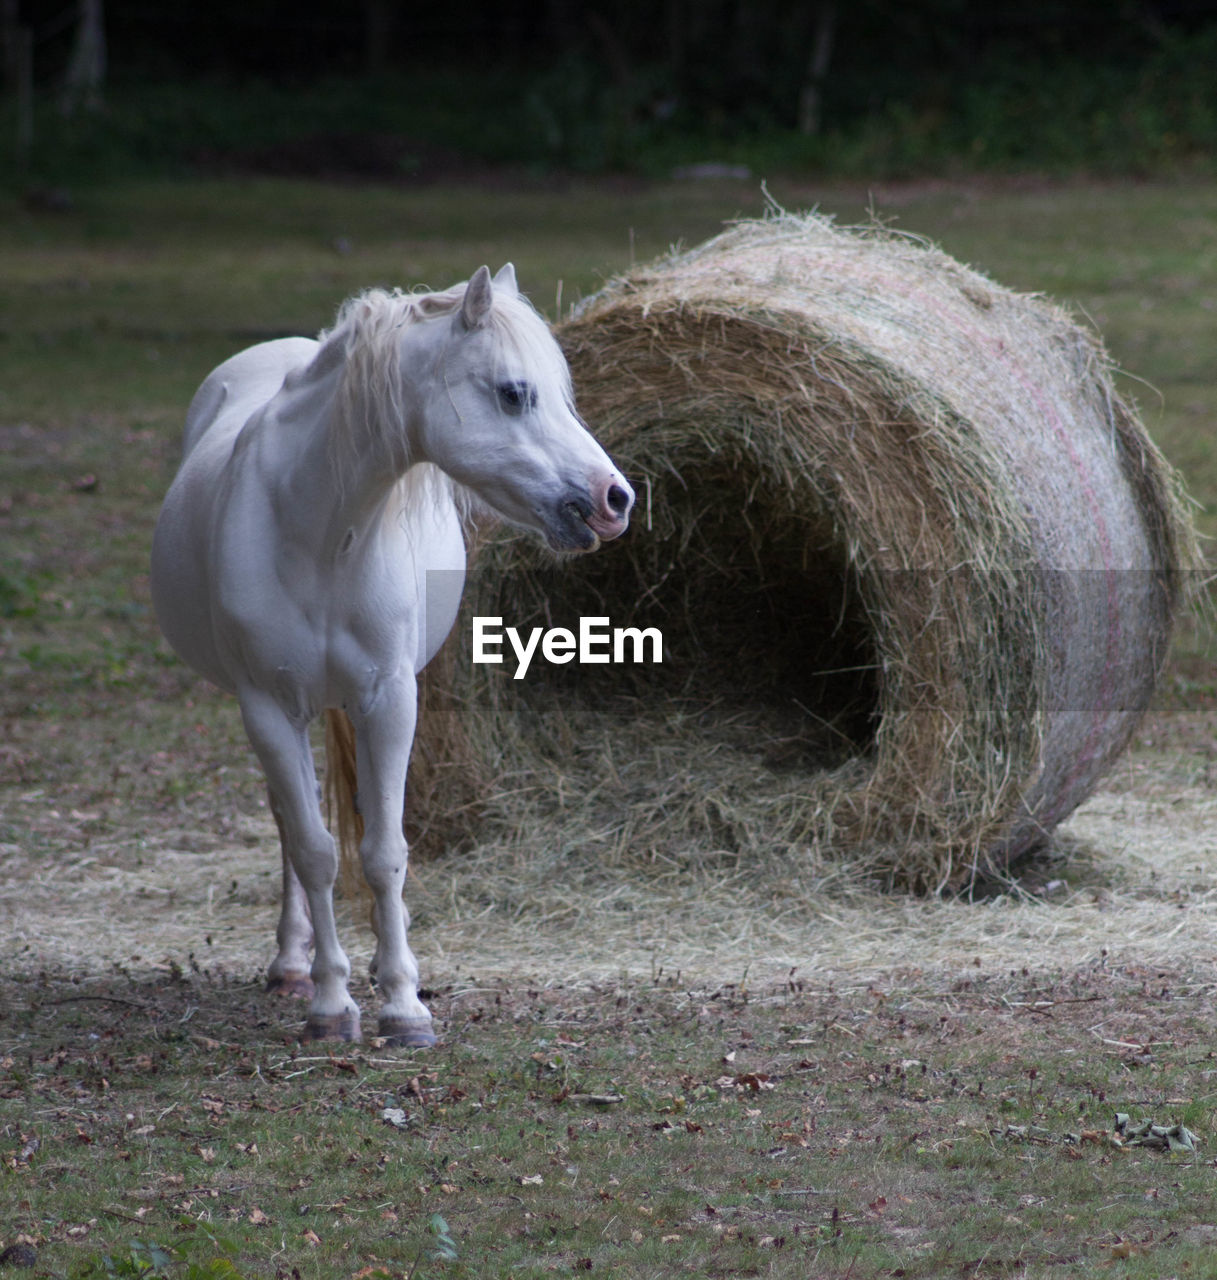 Foal by hay bale on field